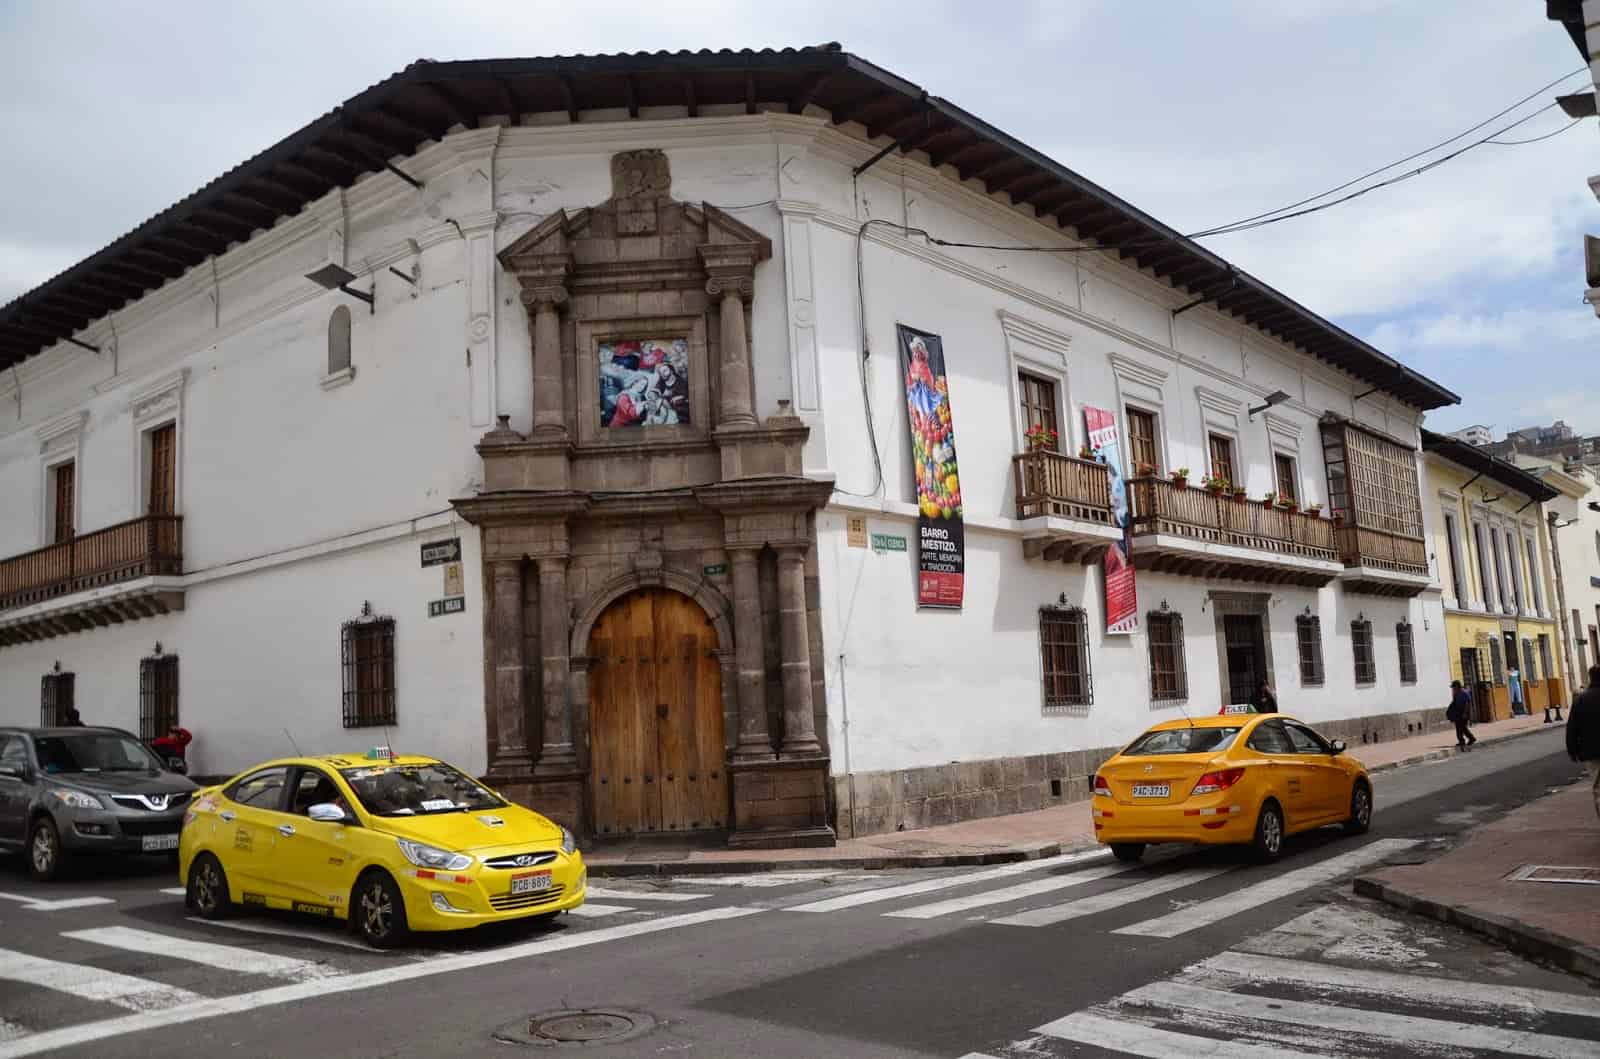 Colonial Art Museum in Quito, Ecuador